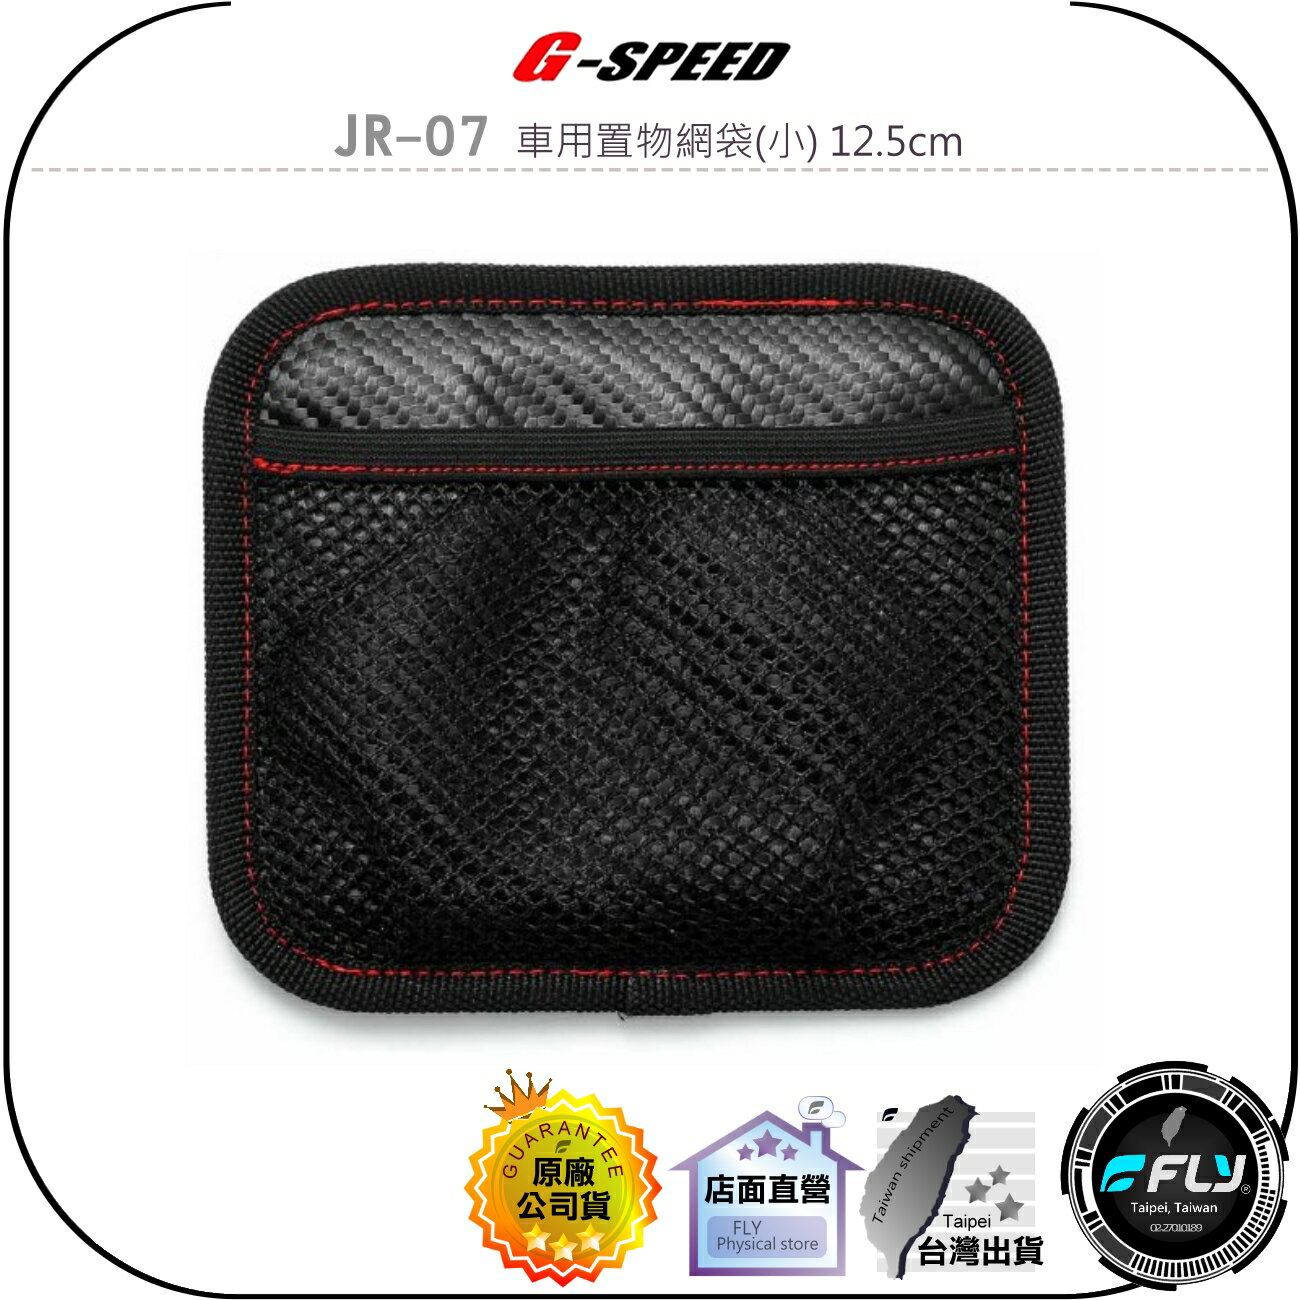 【飛翔商城】G-SPEED JR-07 車用置物網袋(小) 12.5cm◉公司貨◉網狀置物袋◉輕微曲面黏貼◉黑碳纖紋